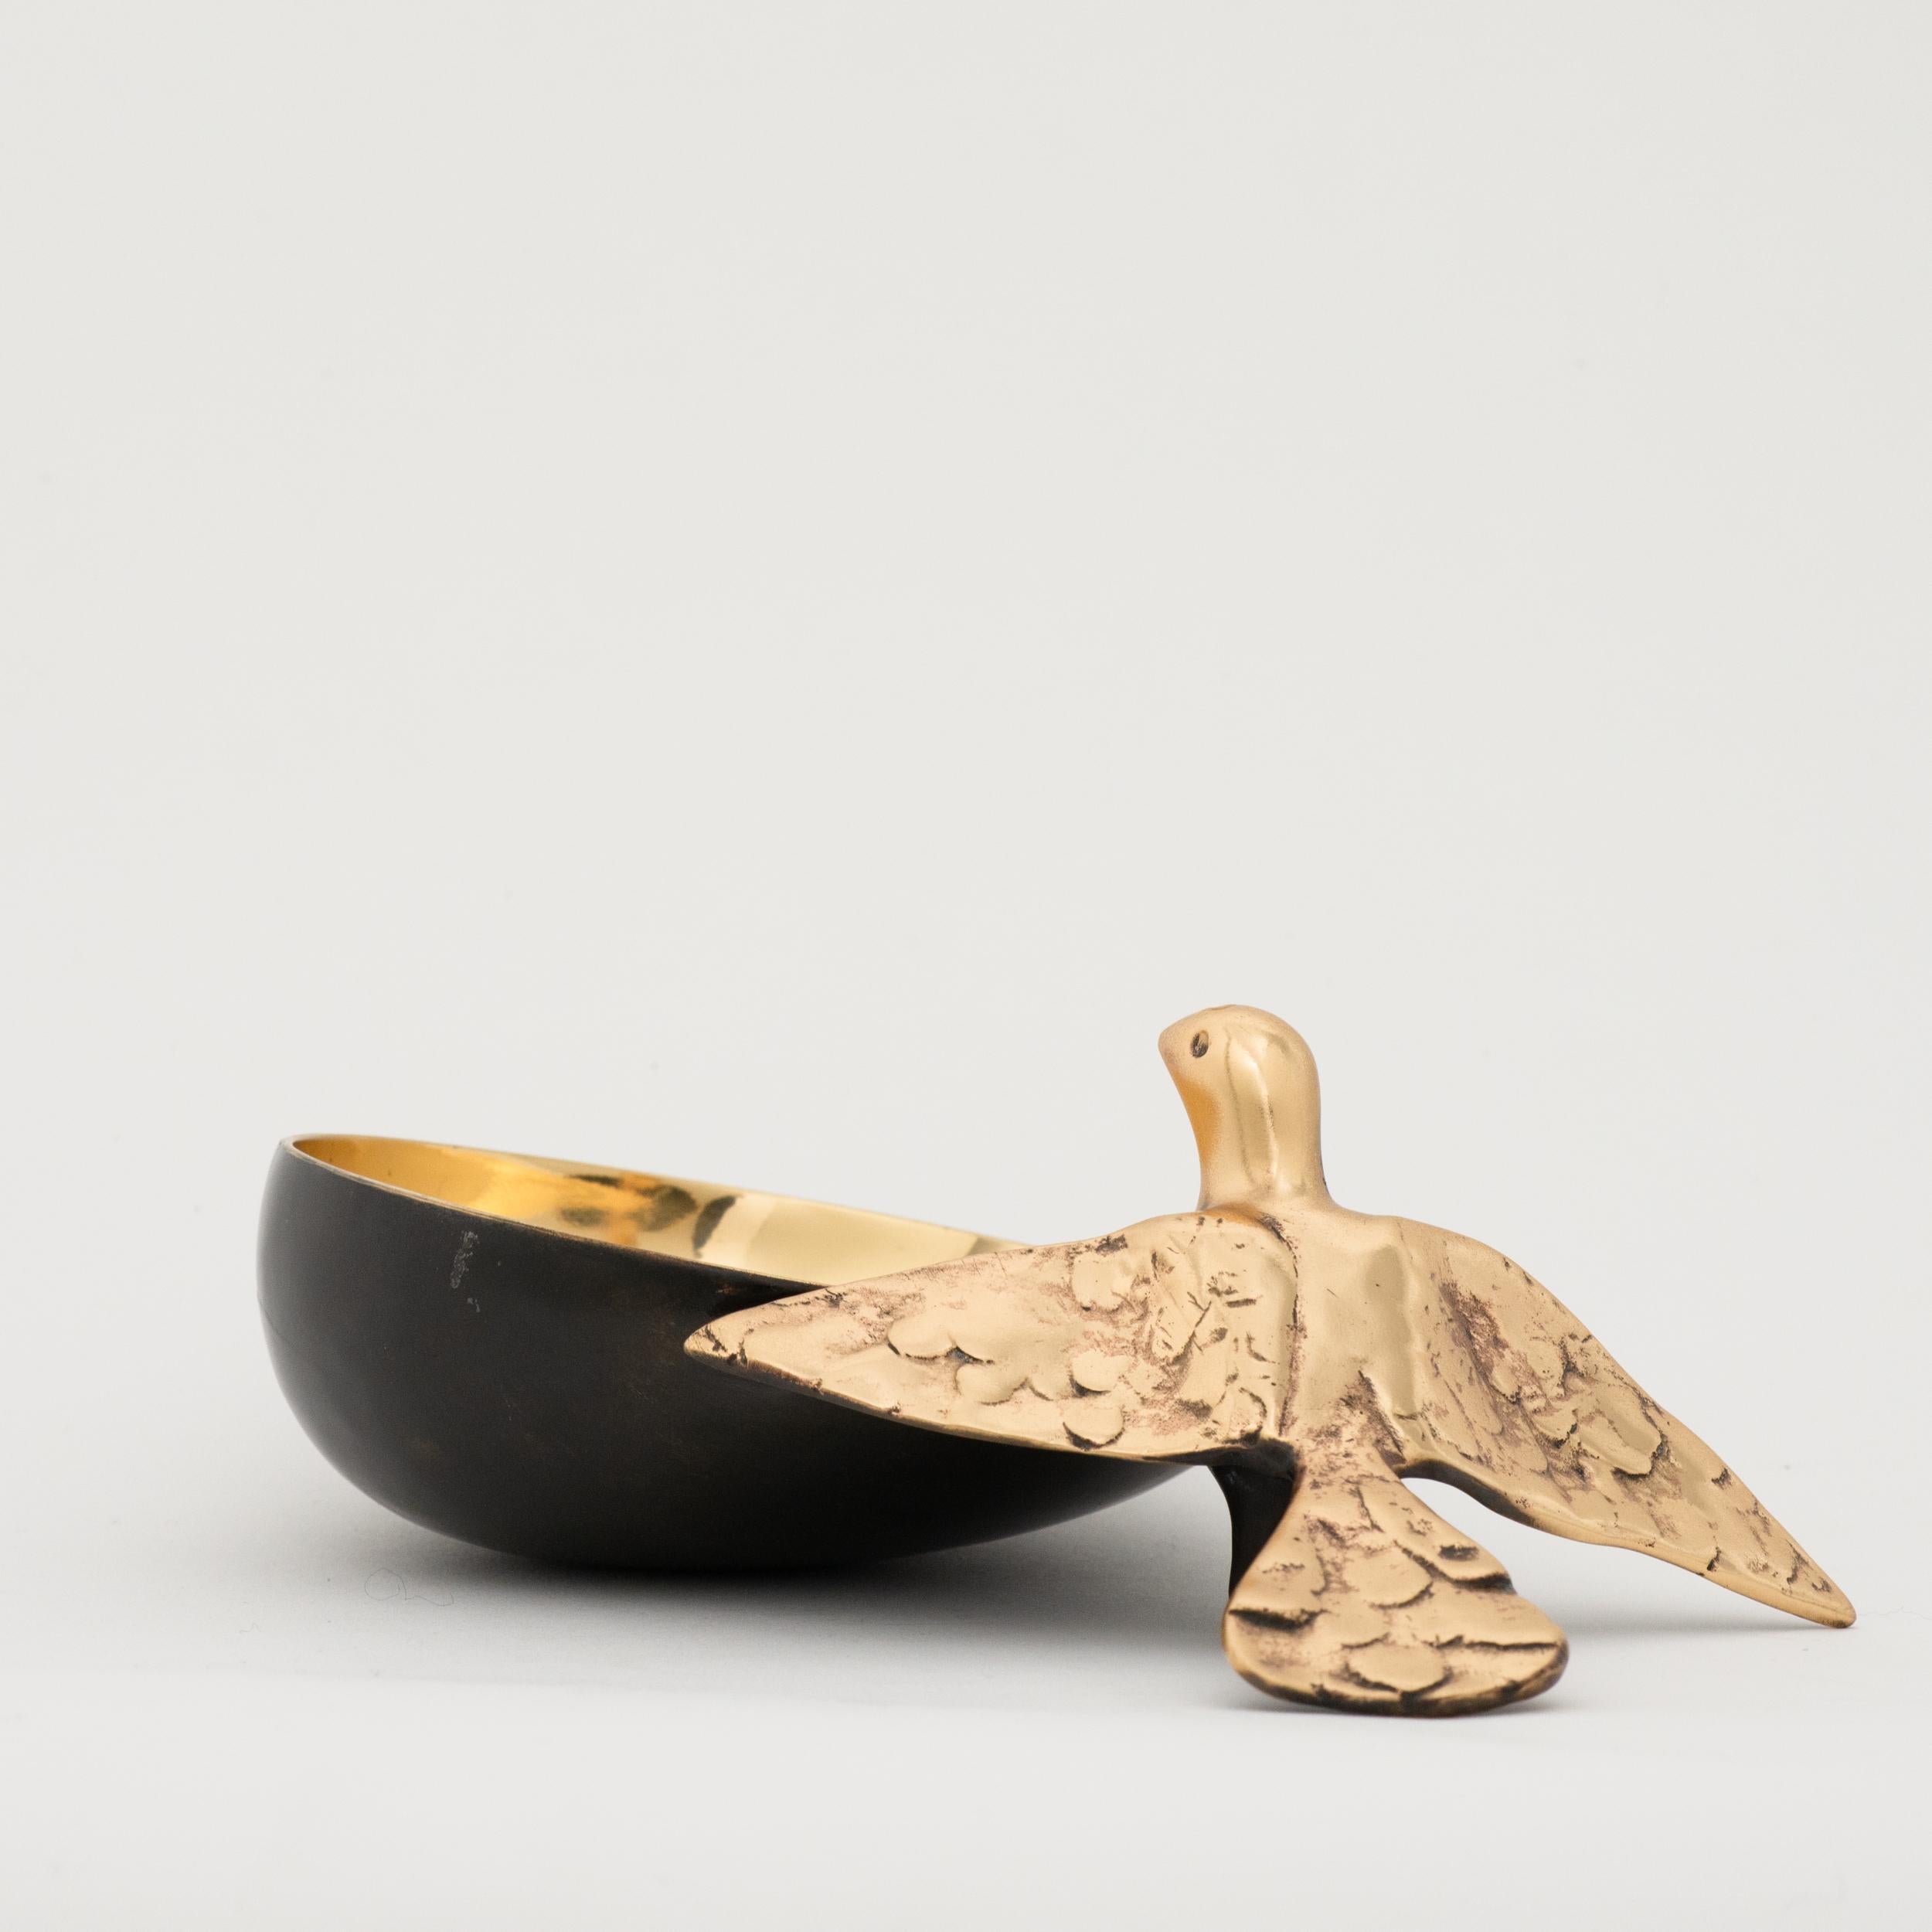 Contemporary Handmade Cast Bronze Decorative Bowl with Bird